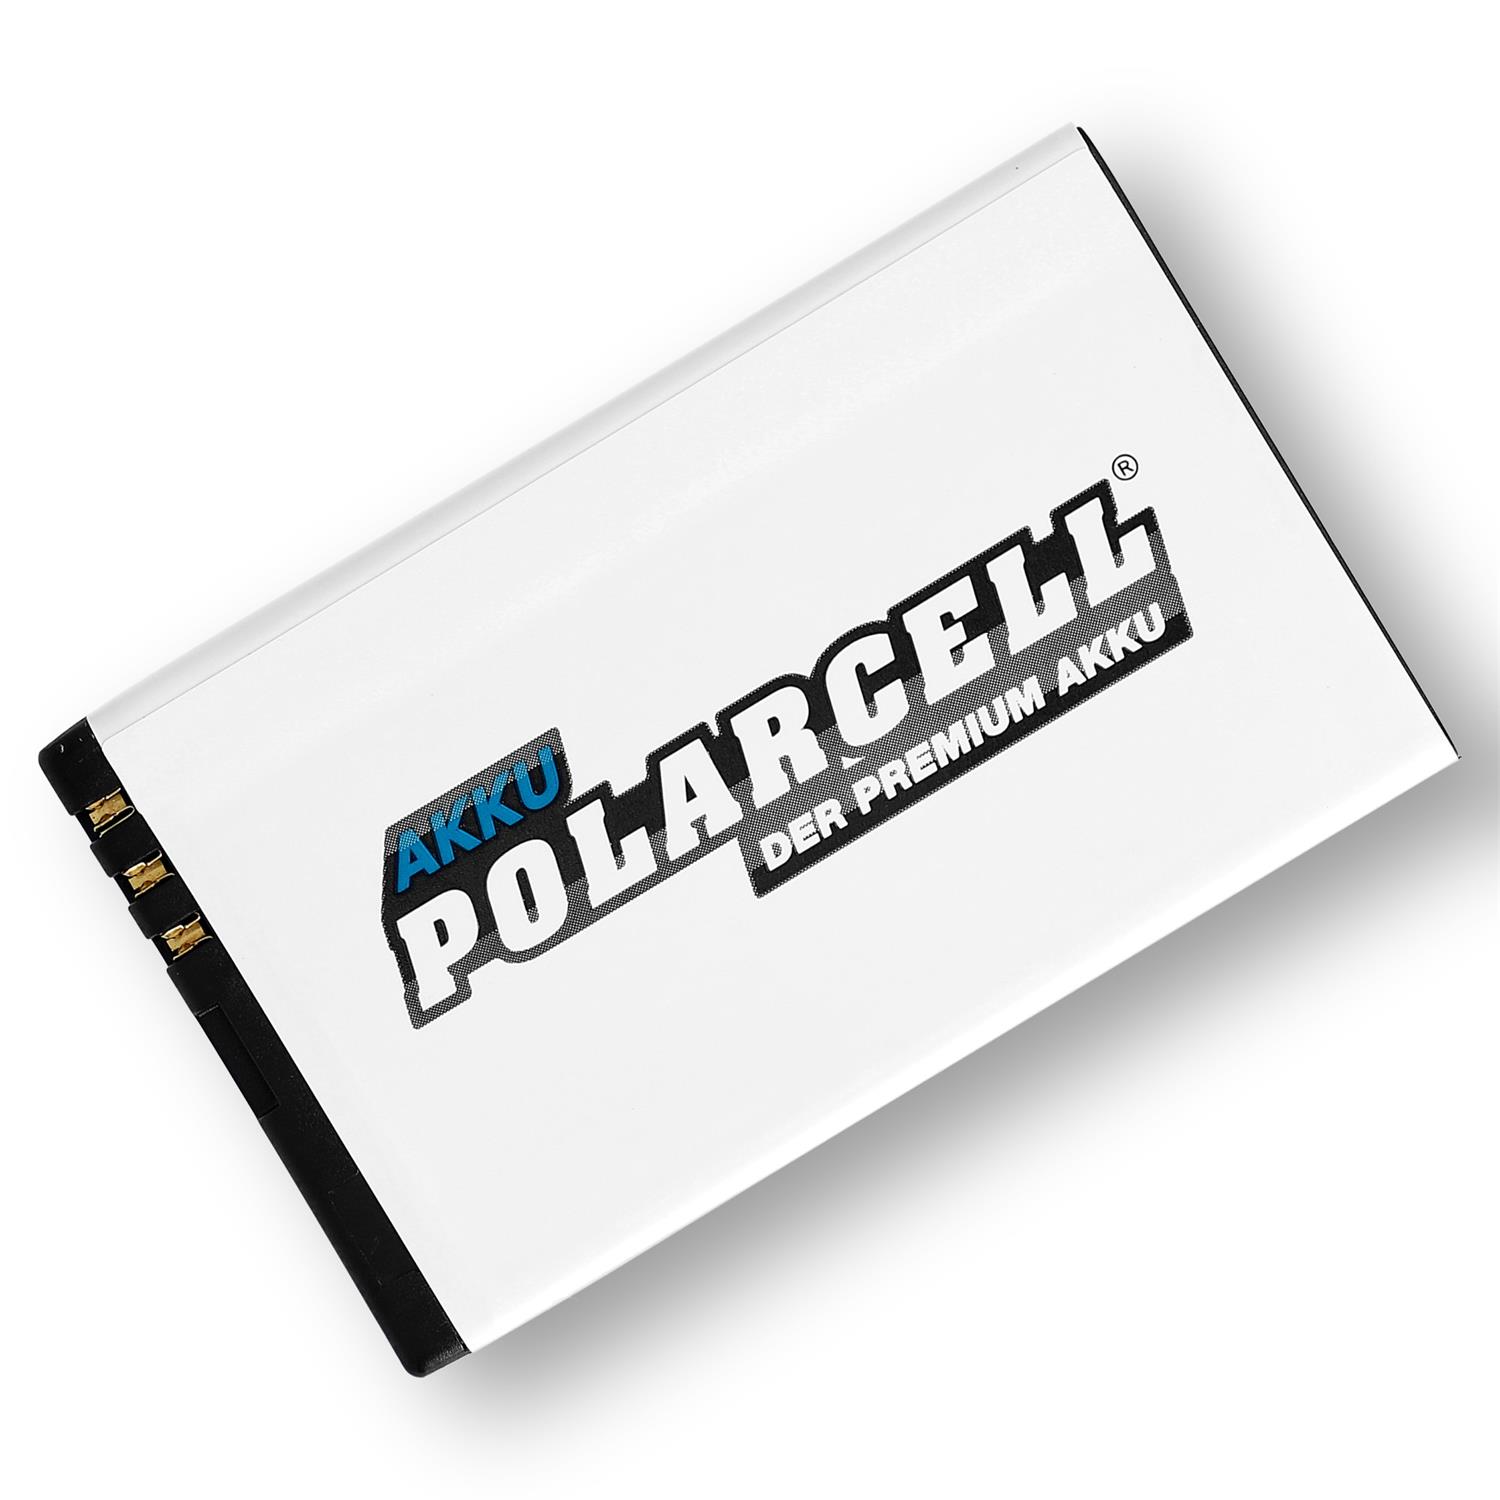 PolarCell Akku für Bea-Fon S35i mit 1300mAh - jetzt kaufen!